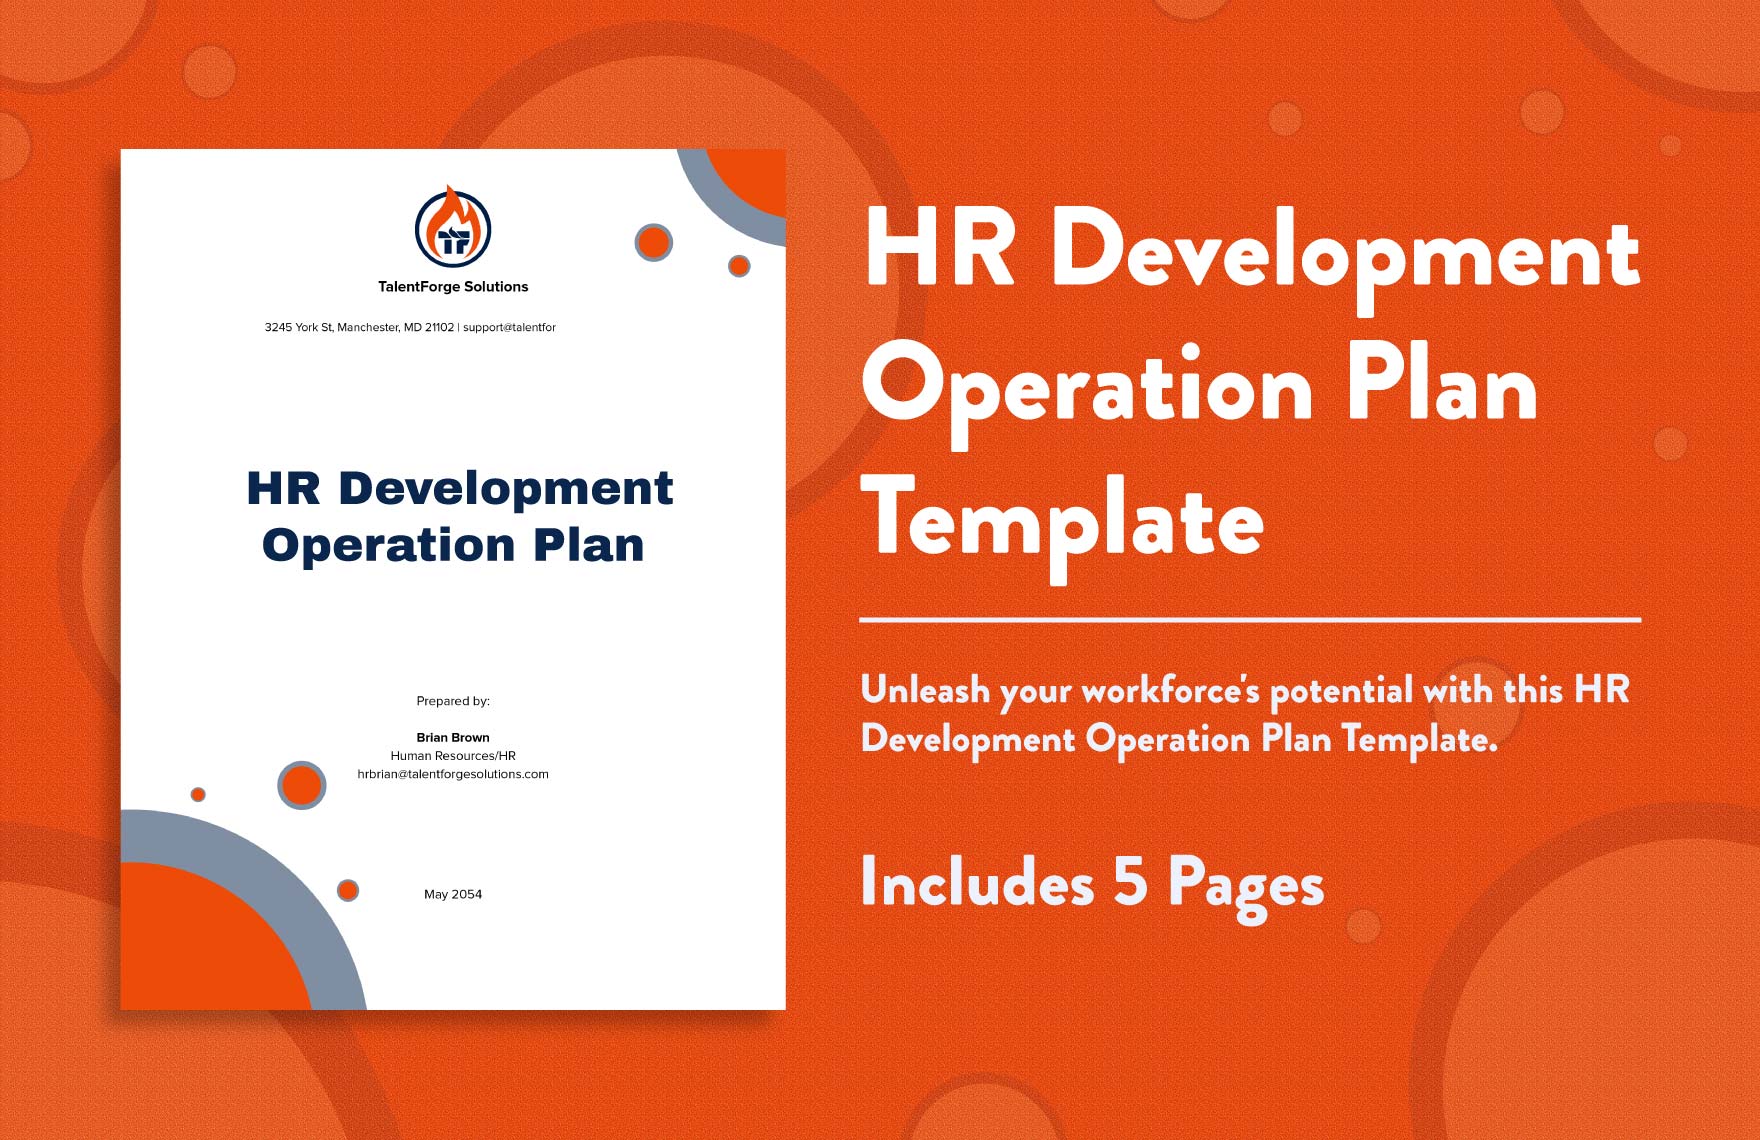  HR Development Operation Plan Template